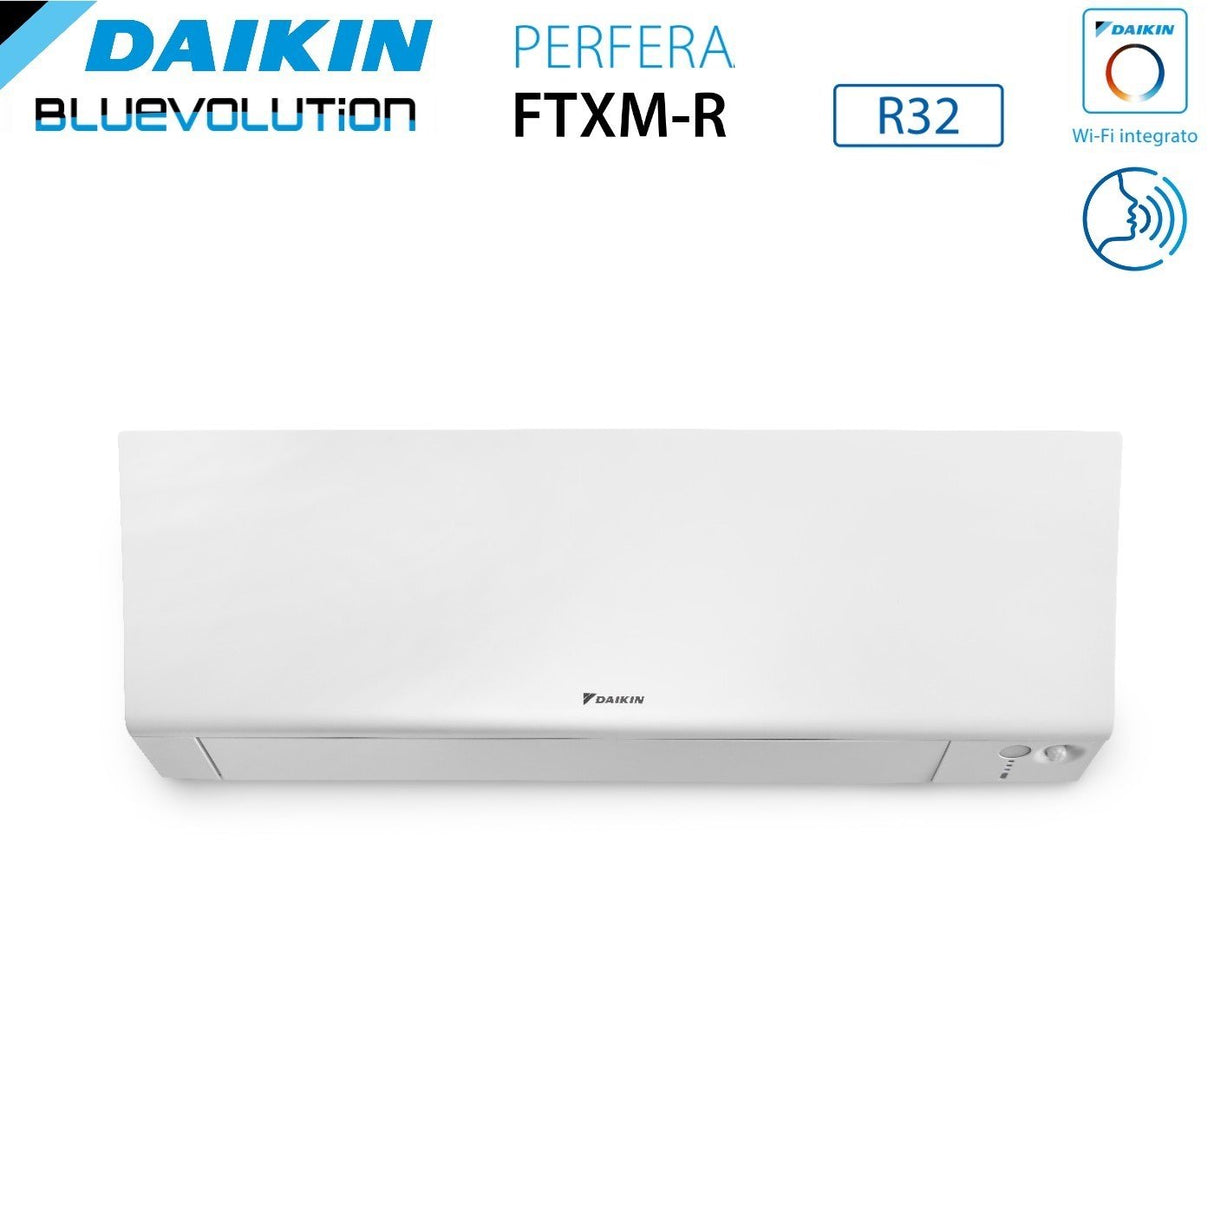 immagine-3-daikin-climatizzatore-condizionatore-daikin-bluevolution-quadri-split-inverter-serie-ftxmr-perfera-wall-7999-con-4mxm68a-r-32-wi-fi-integrato-7000900090009000-garanzia-italiana